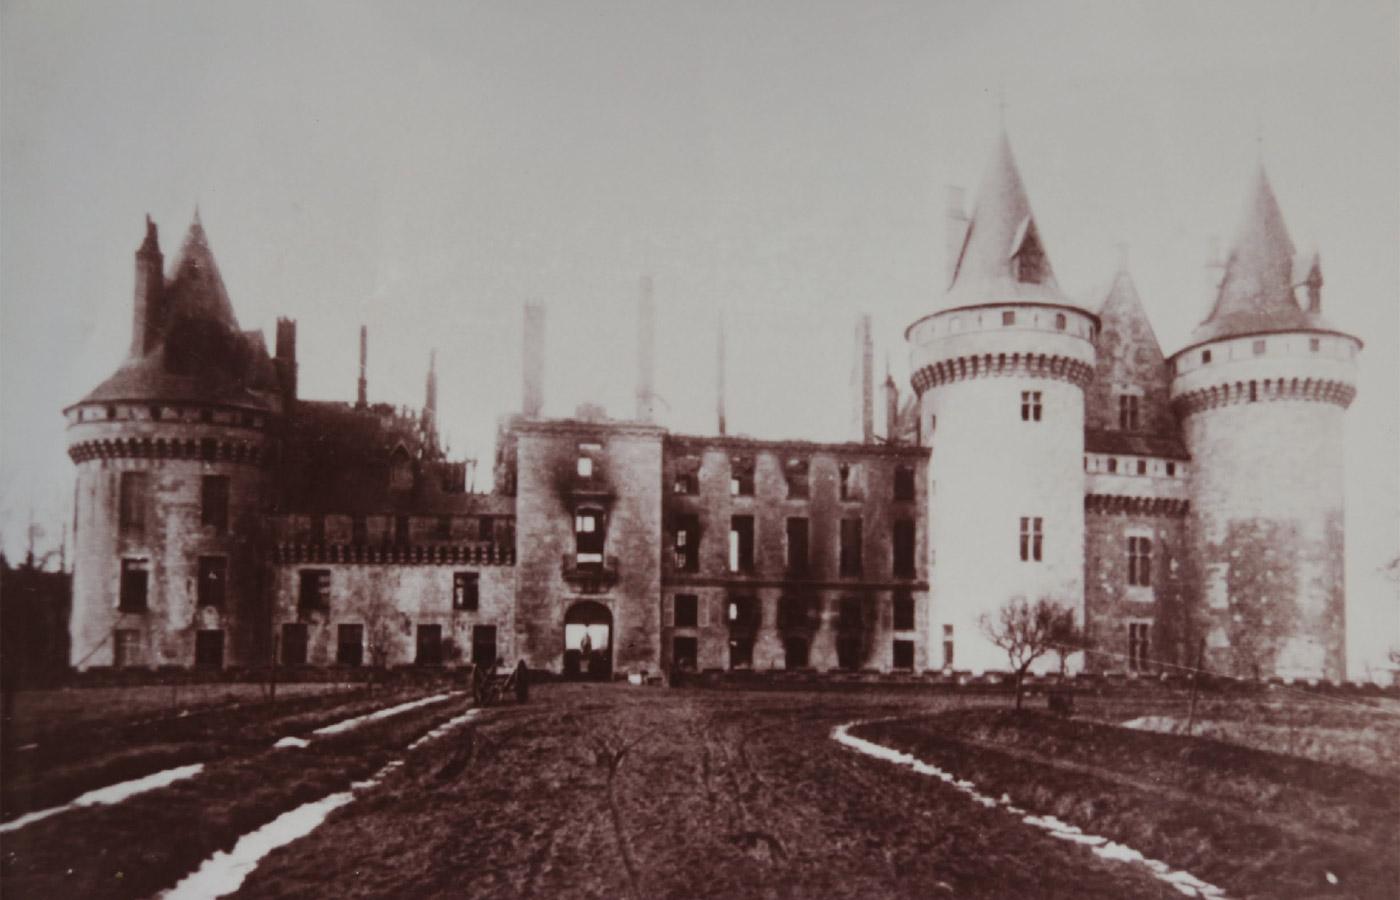 Image du château de Sully-sur-Loire après son incendi en 1918